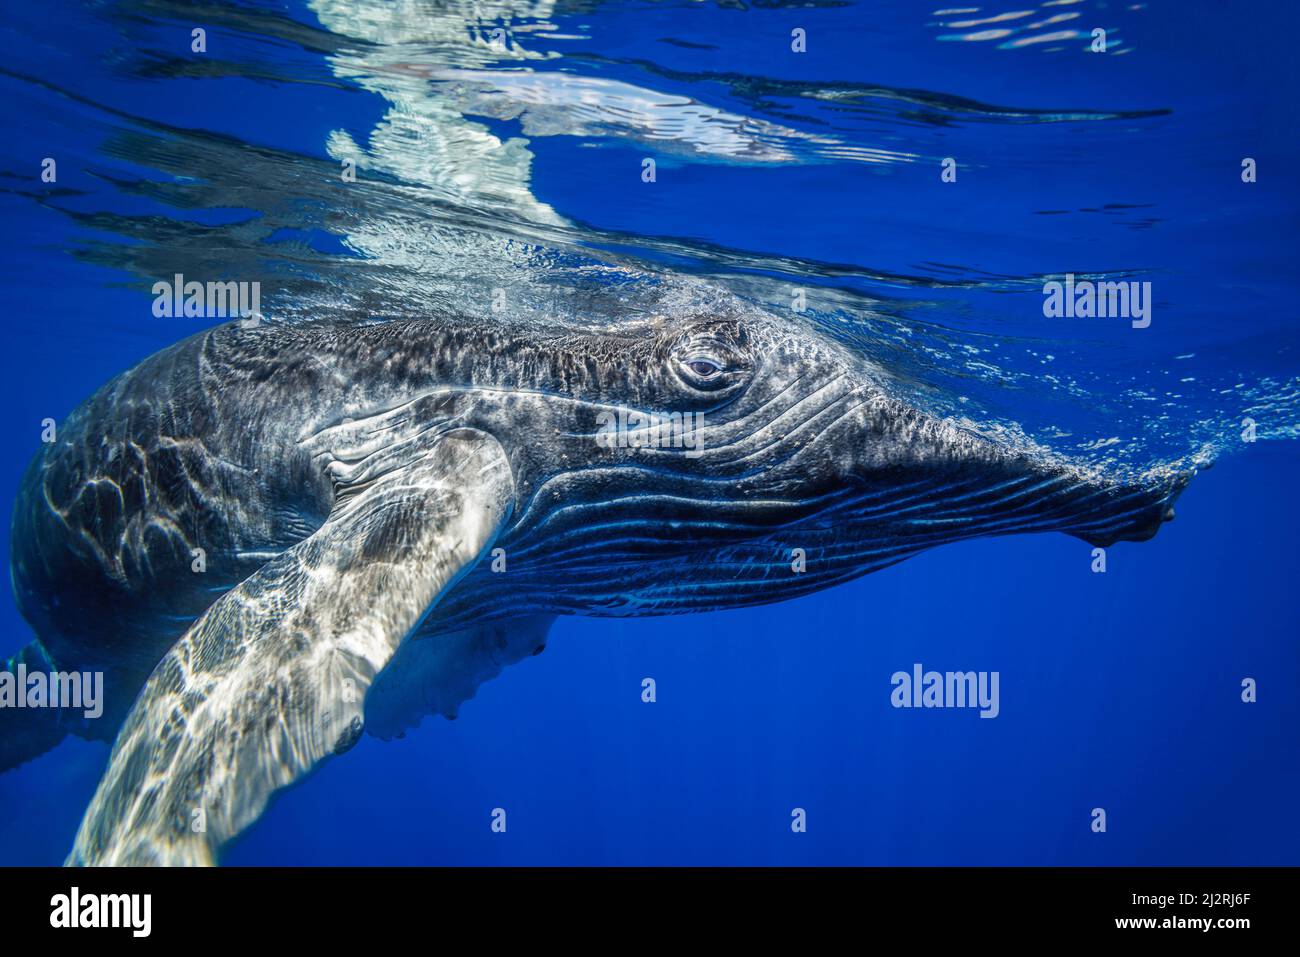 Une jeune baleine à bosse, Megaptera novaeangliae, sous l'eau, Hawaï. Banque D'Images